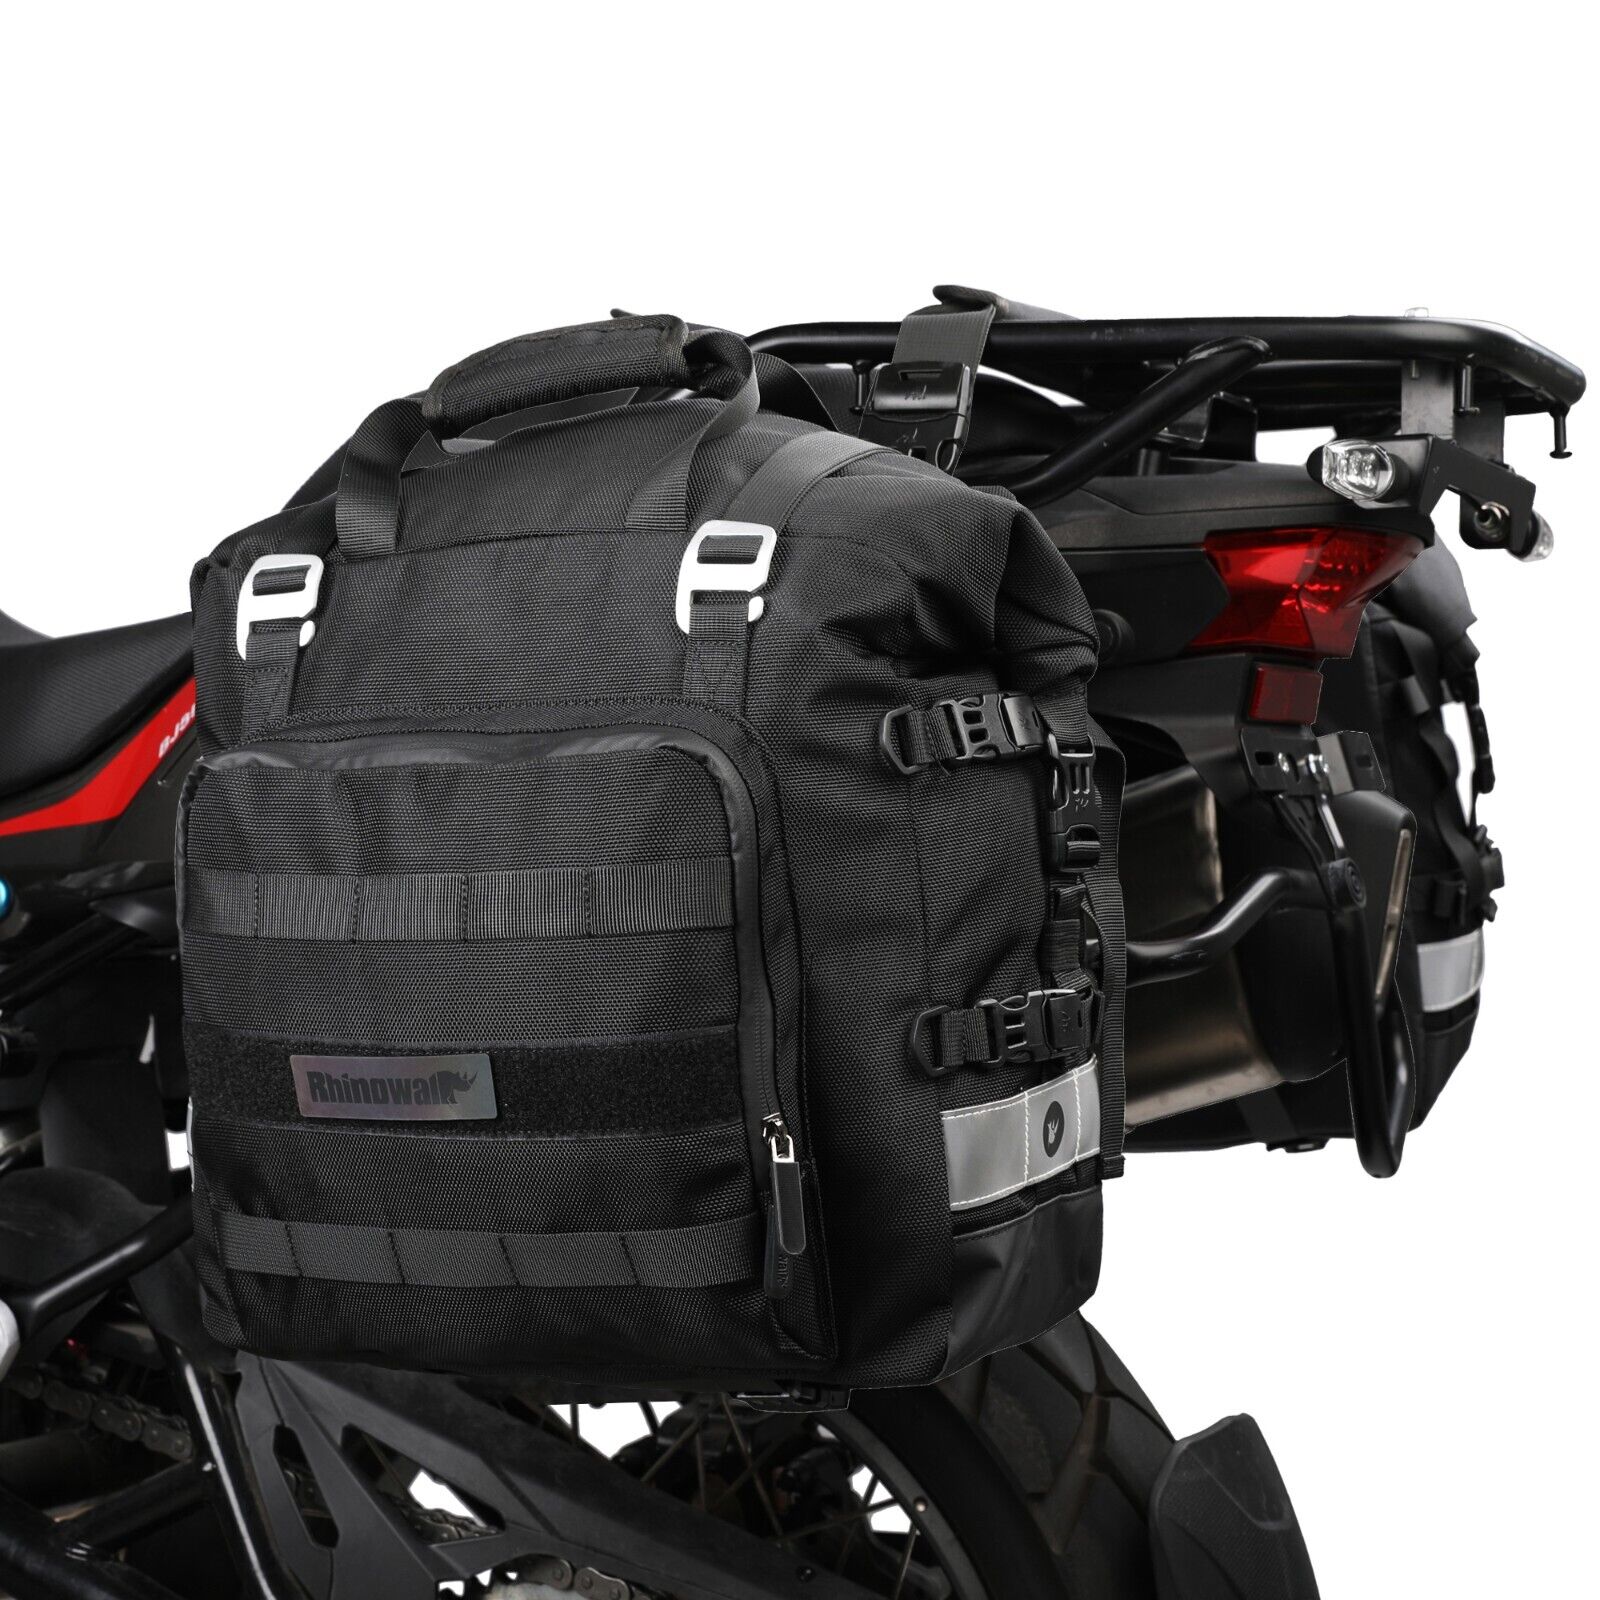 Rhinowalk Motorcycle Side Pannier Bag Waterproof Quick Release Saddle Bag Black